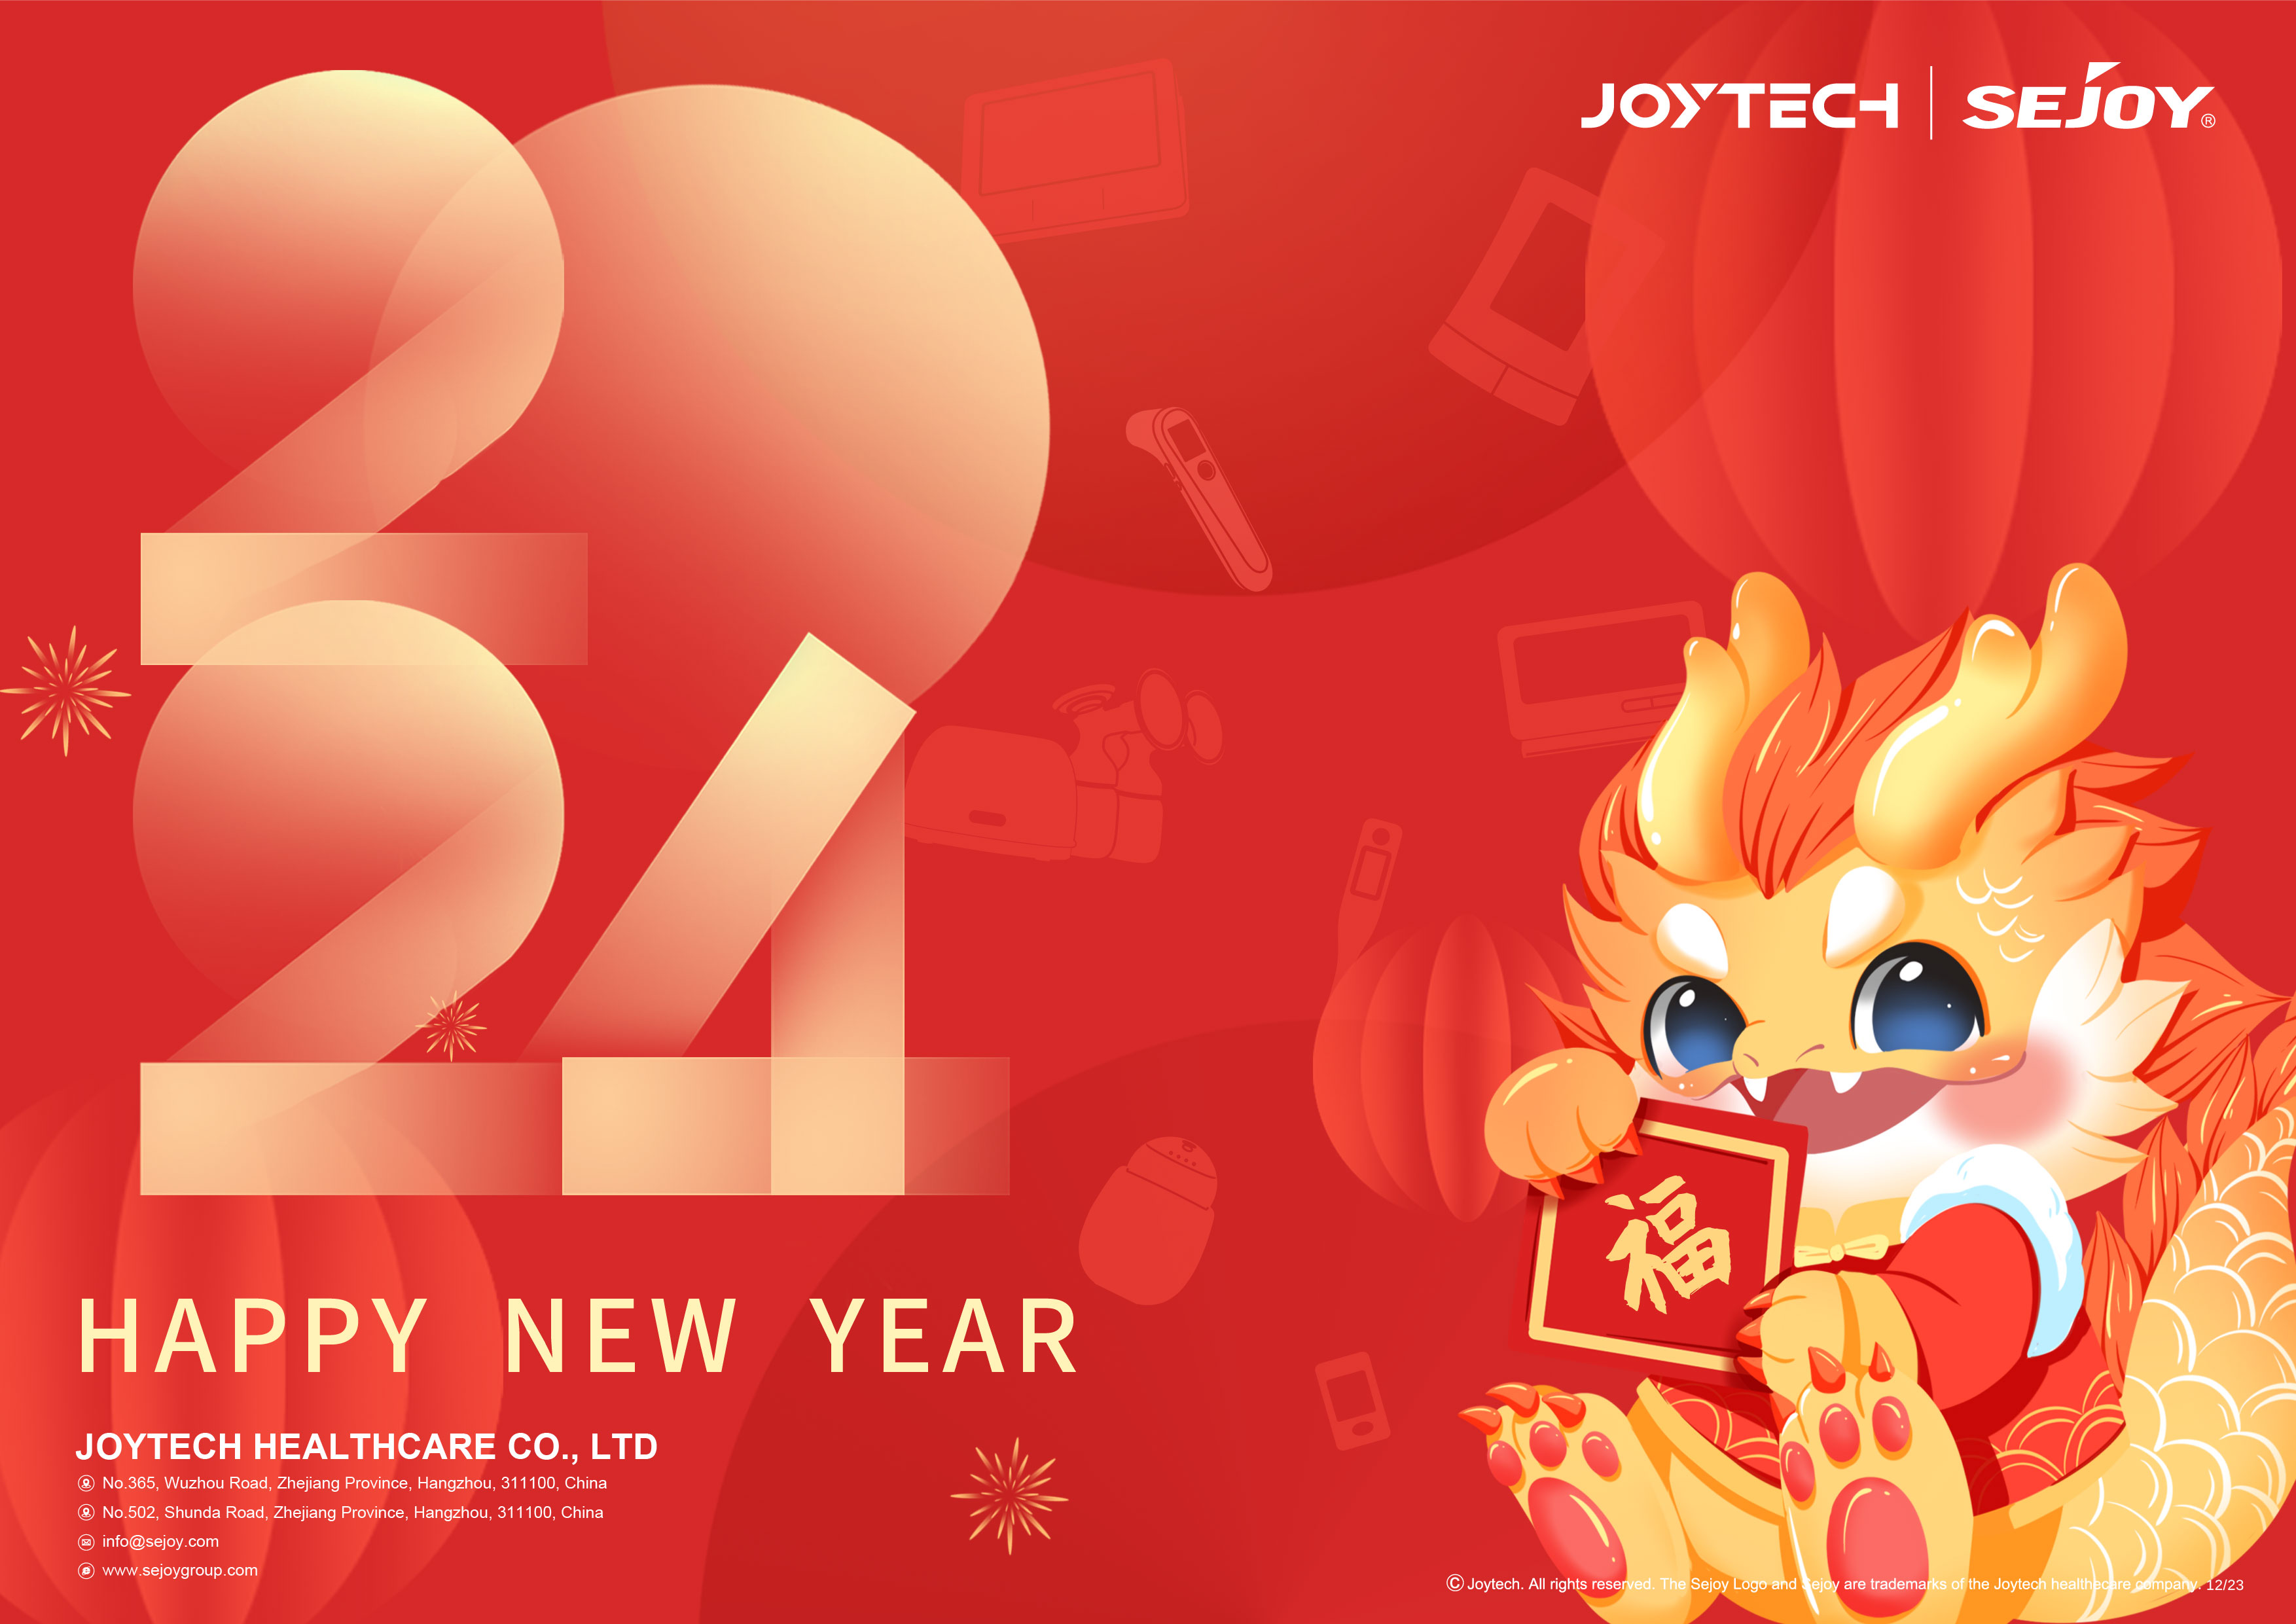 Съобщение за празниците на пролетния фестивал на Joytech - Честита година на дракона, щастлив всеки ден!